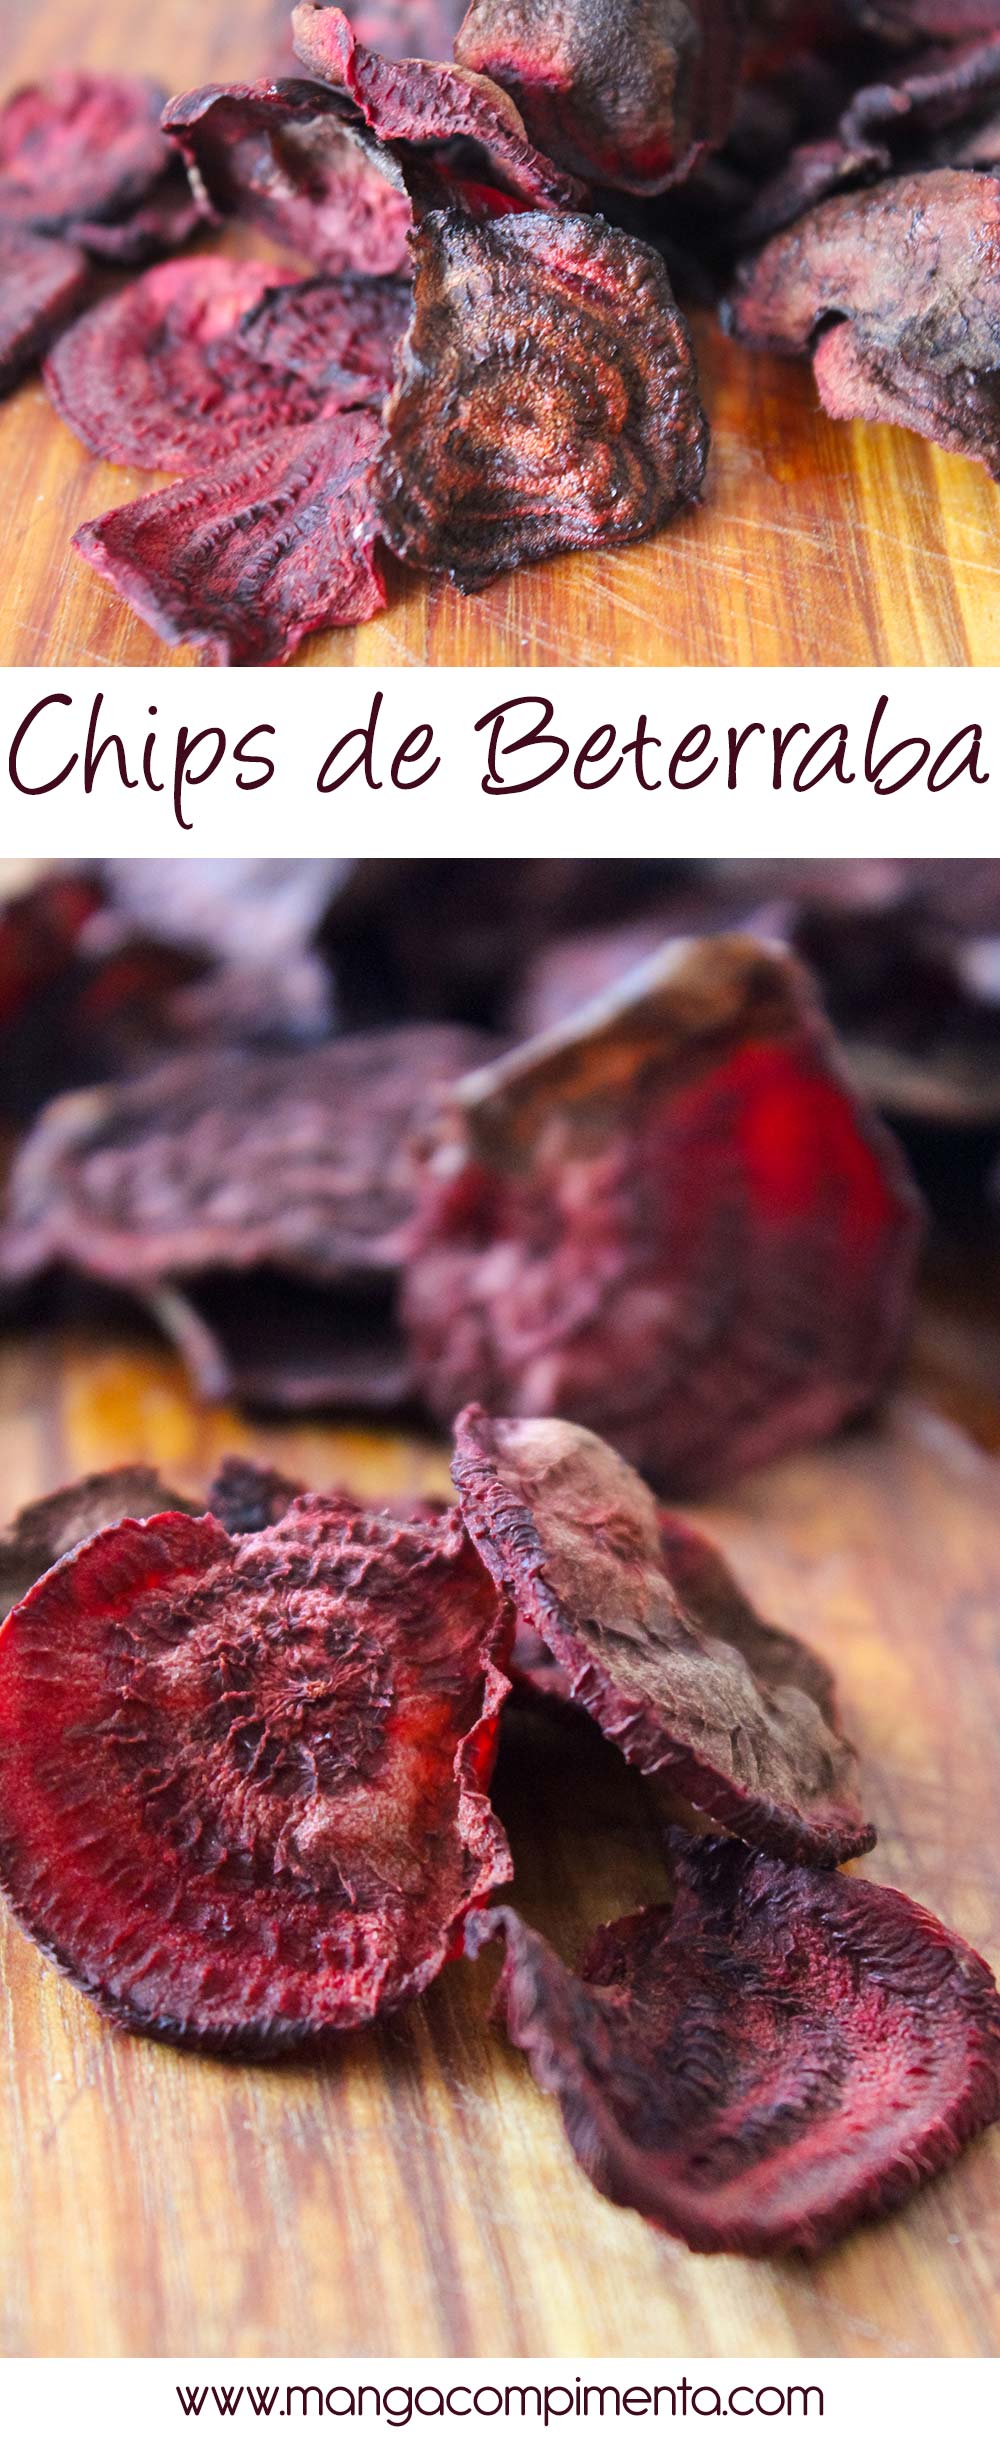 Chips de Beterraba | Troque os salgadinhos industrializados por esse petisco natural e que faz bem!